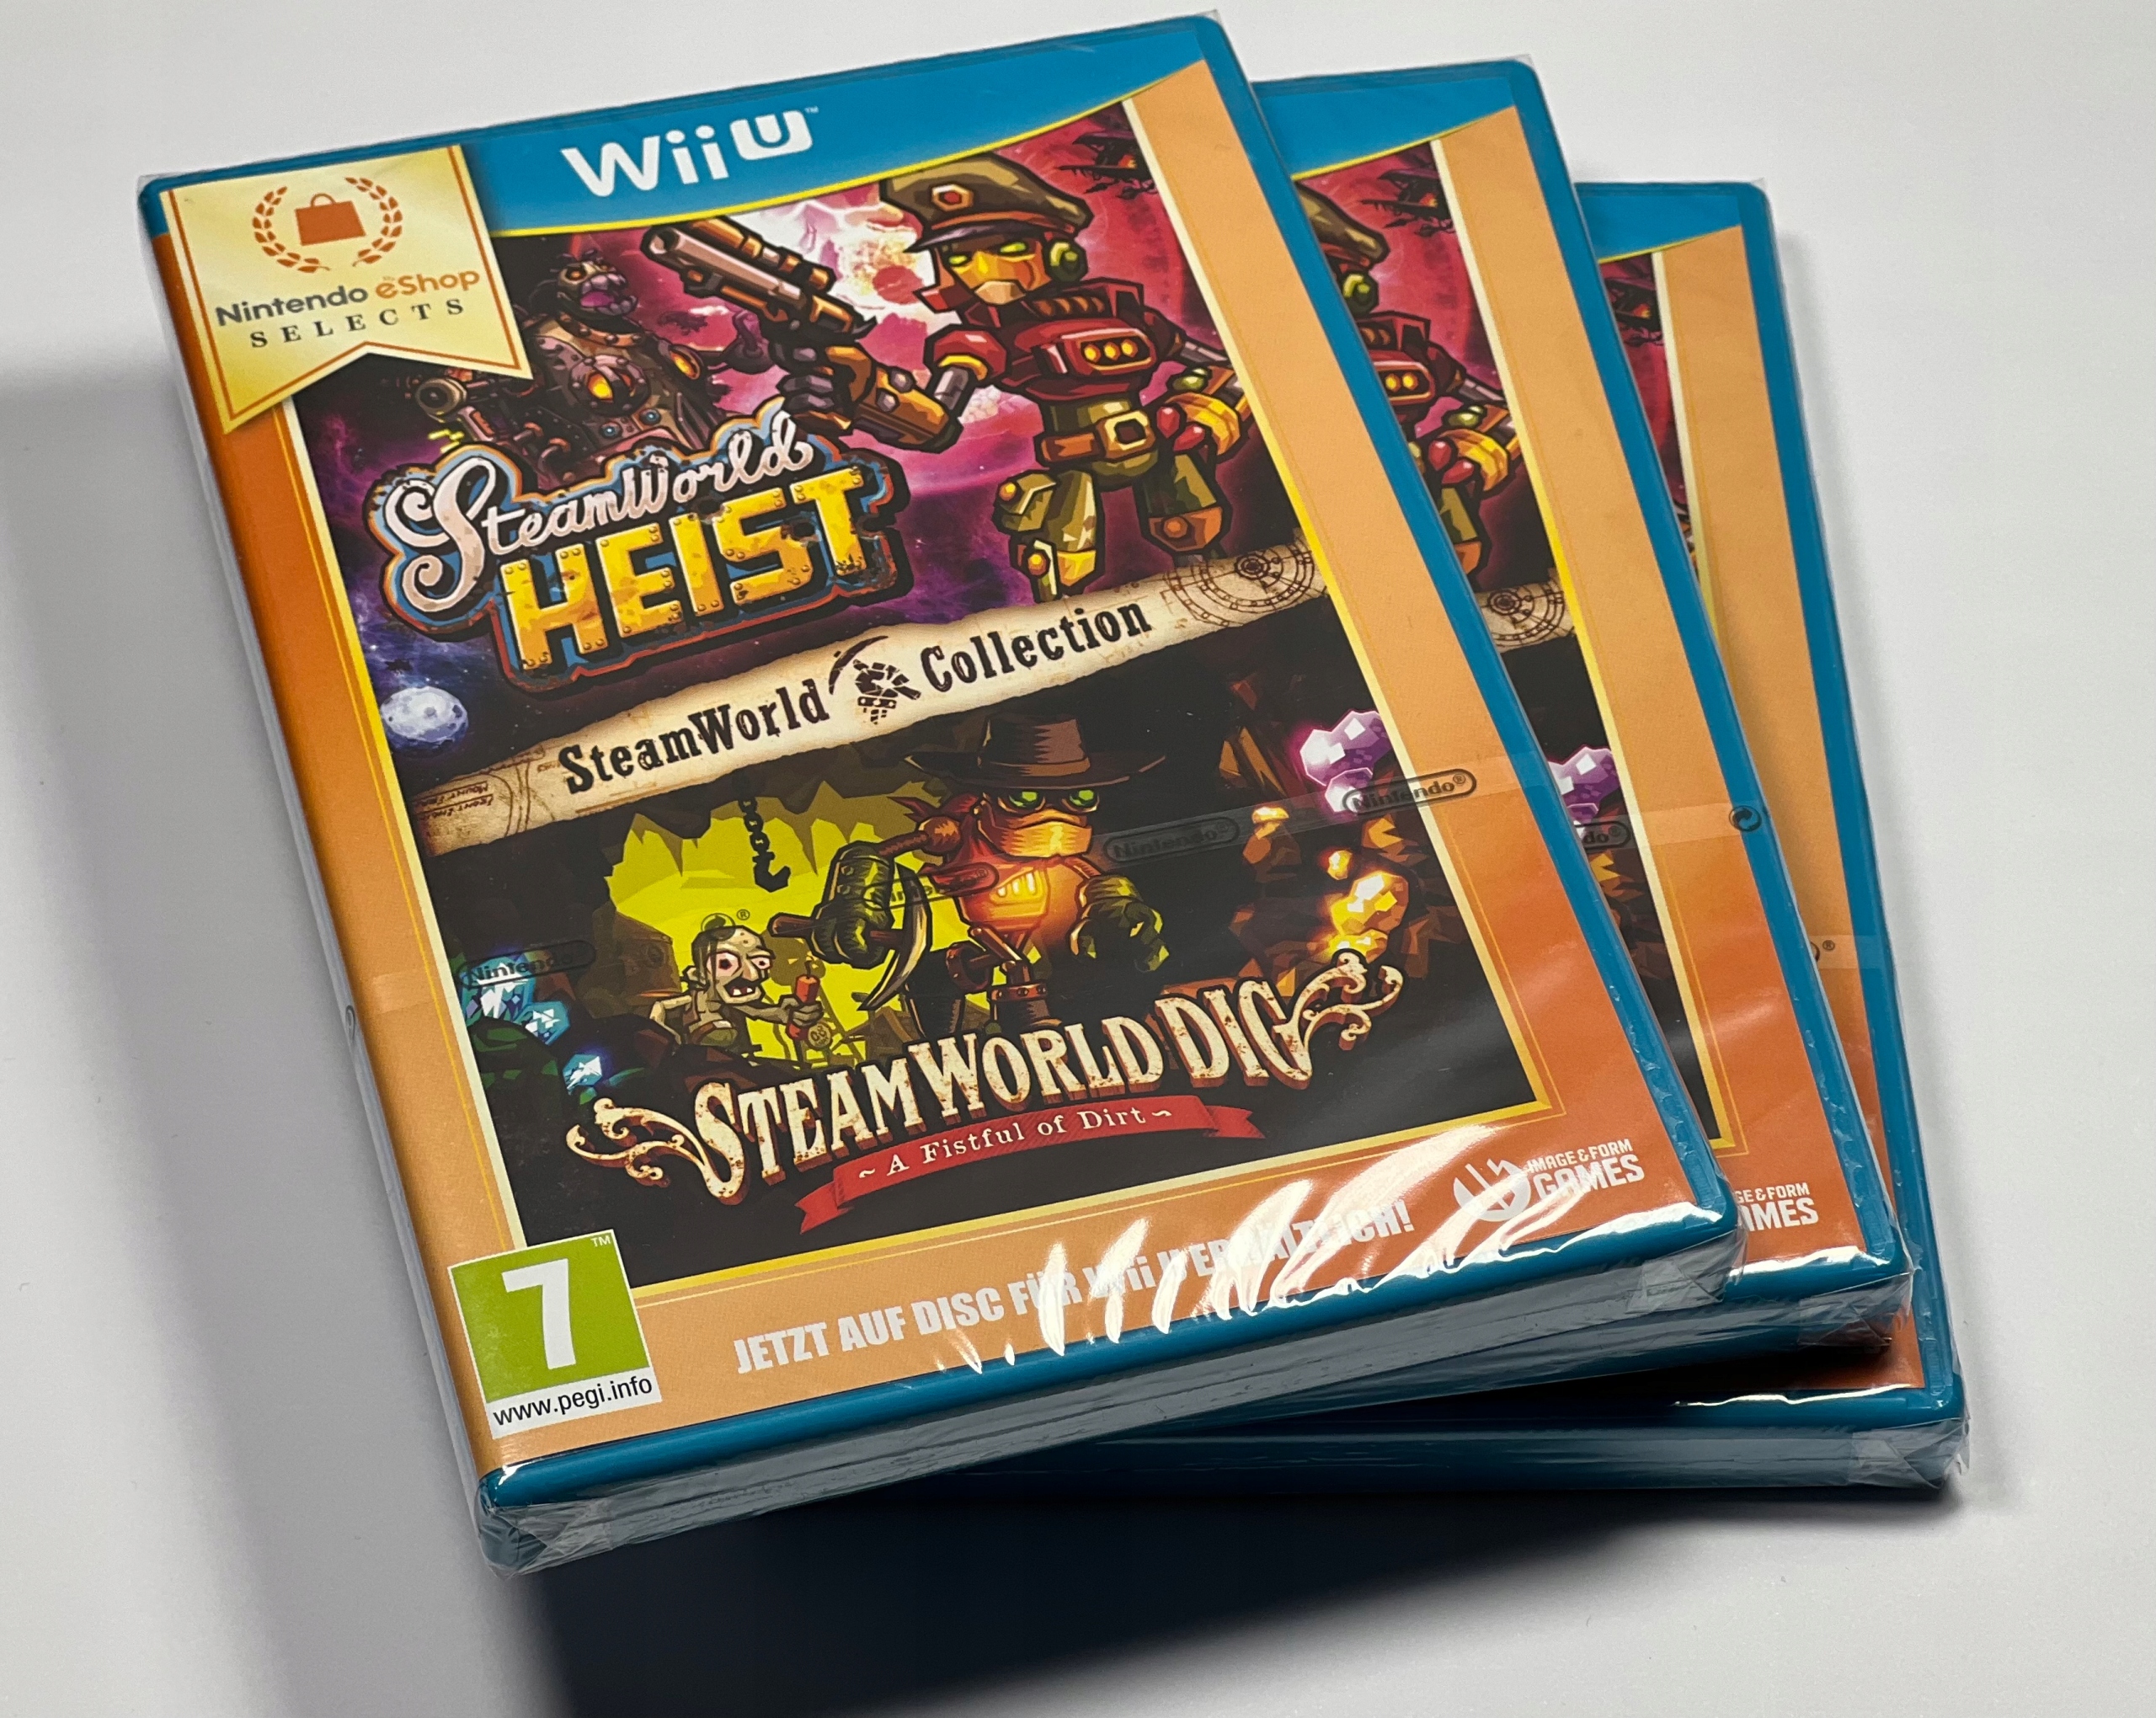 SteamWorld Collection Nowa Folia Nintendo Wii U - Stan: nowy 67,99 zł -  Sklepy, Opinie, Ceny w Allegro.pl